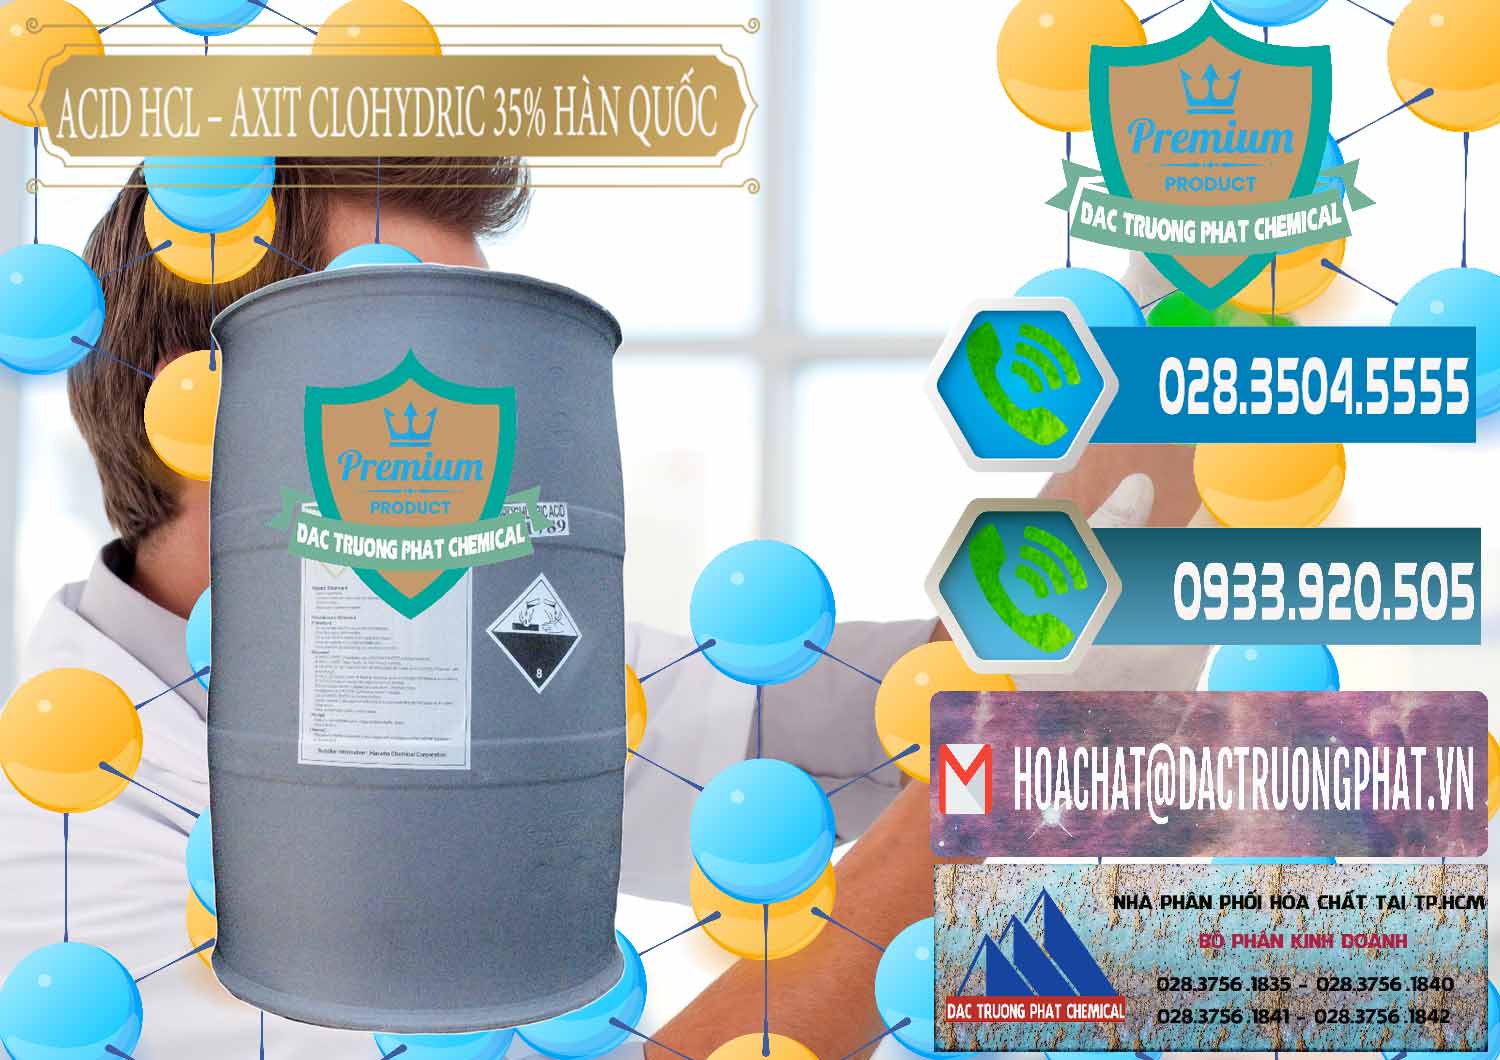 Cty chuyên phân phối ( bán ) Acid HCL - Axit Cohidric 35% Hàn Quốc Korea - 0011 - Công ty cung cấp & phân phối hóa chất tại TP.HCM - congtyhoachat.net